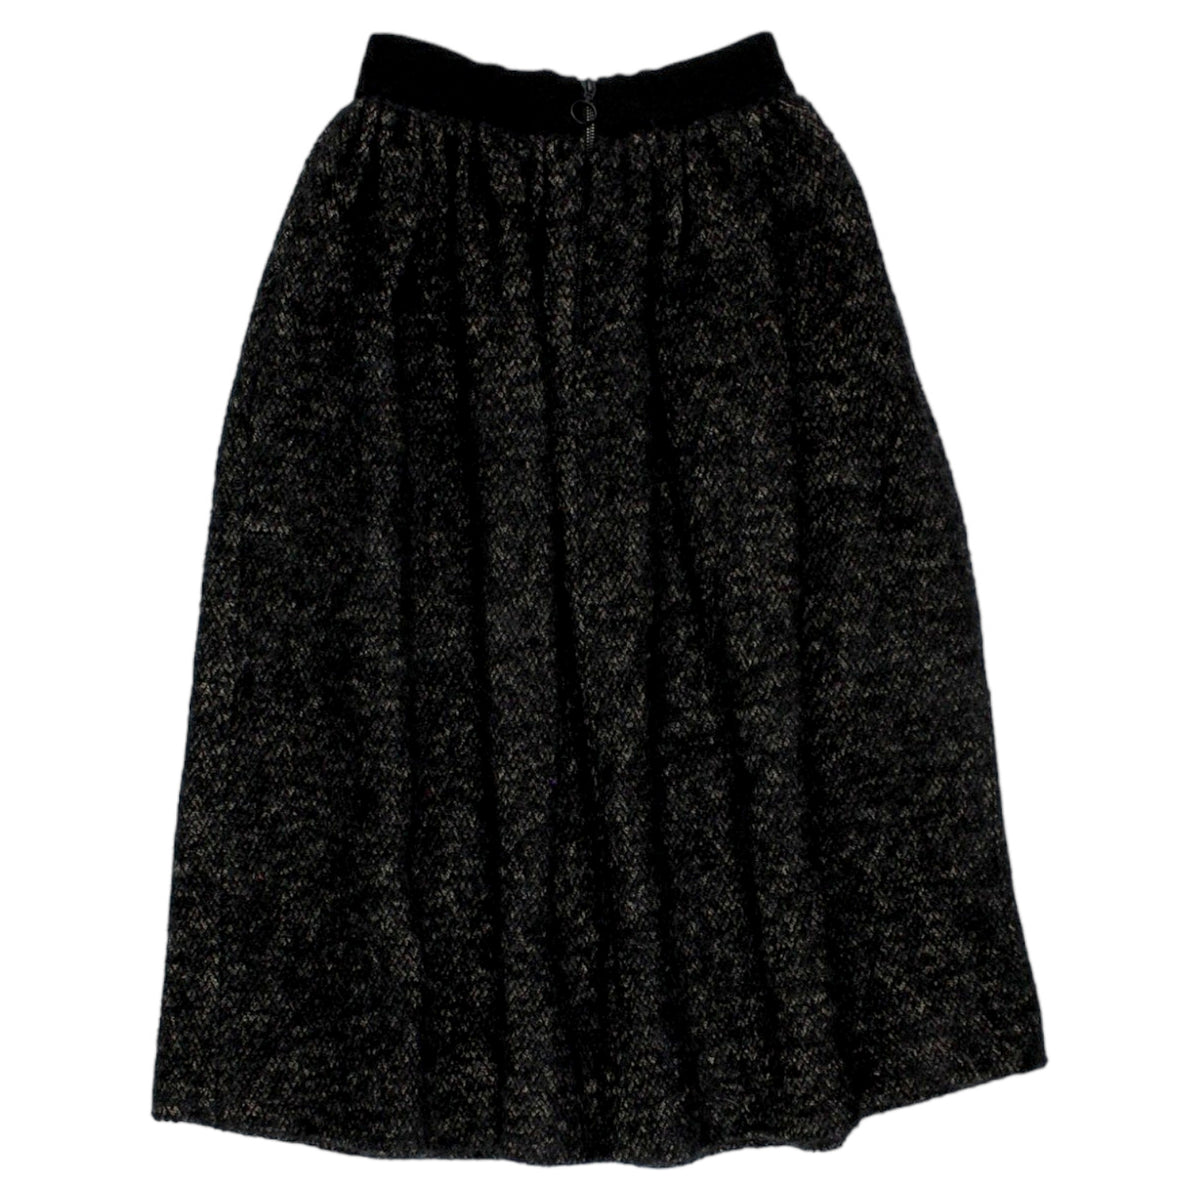 Orla Kiely Black/Cream Brushed Skirt